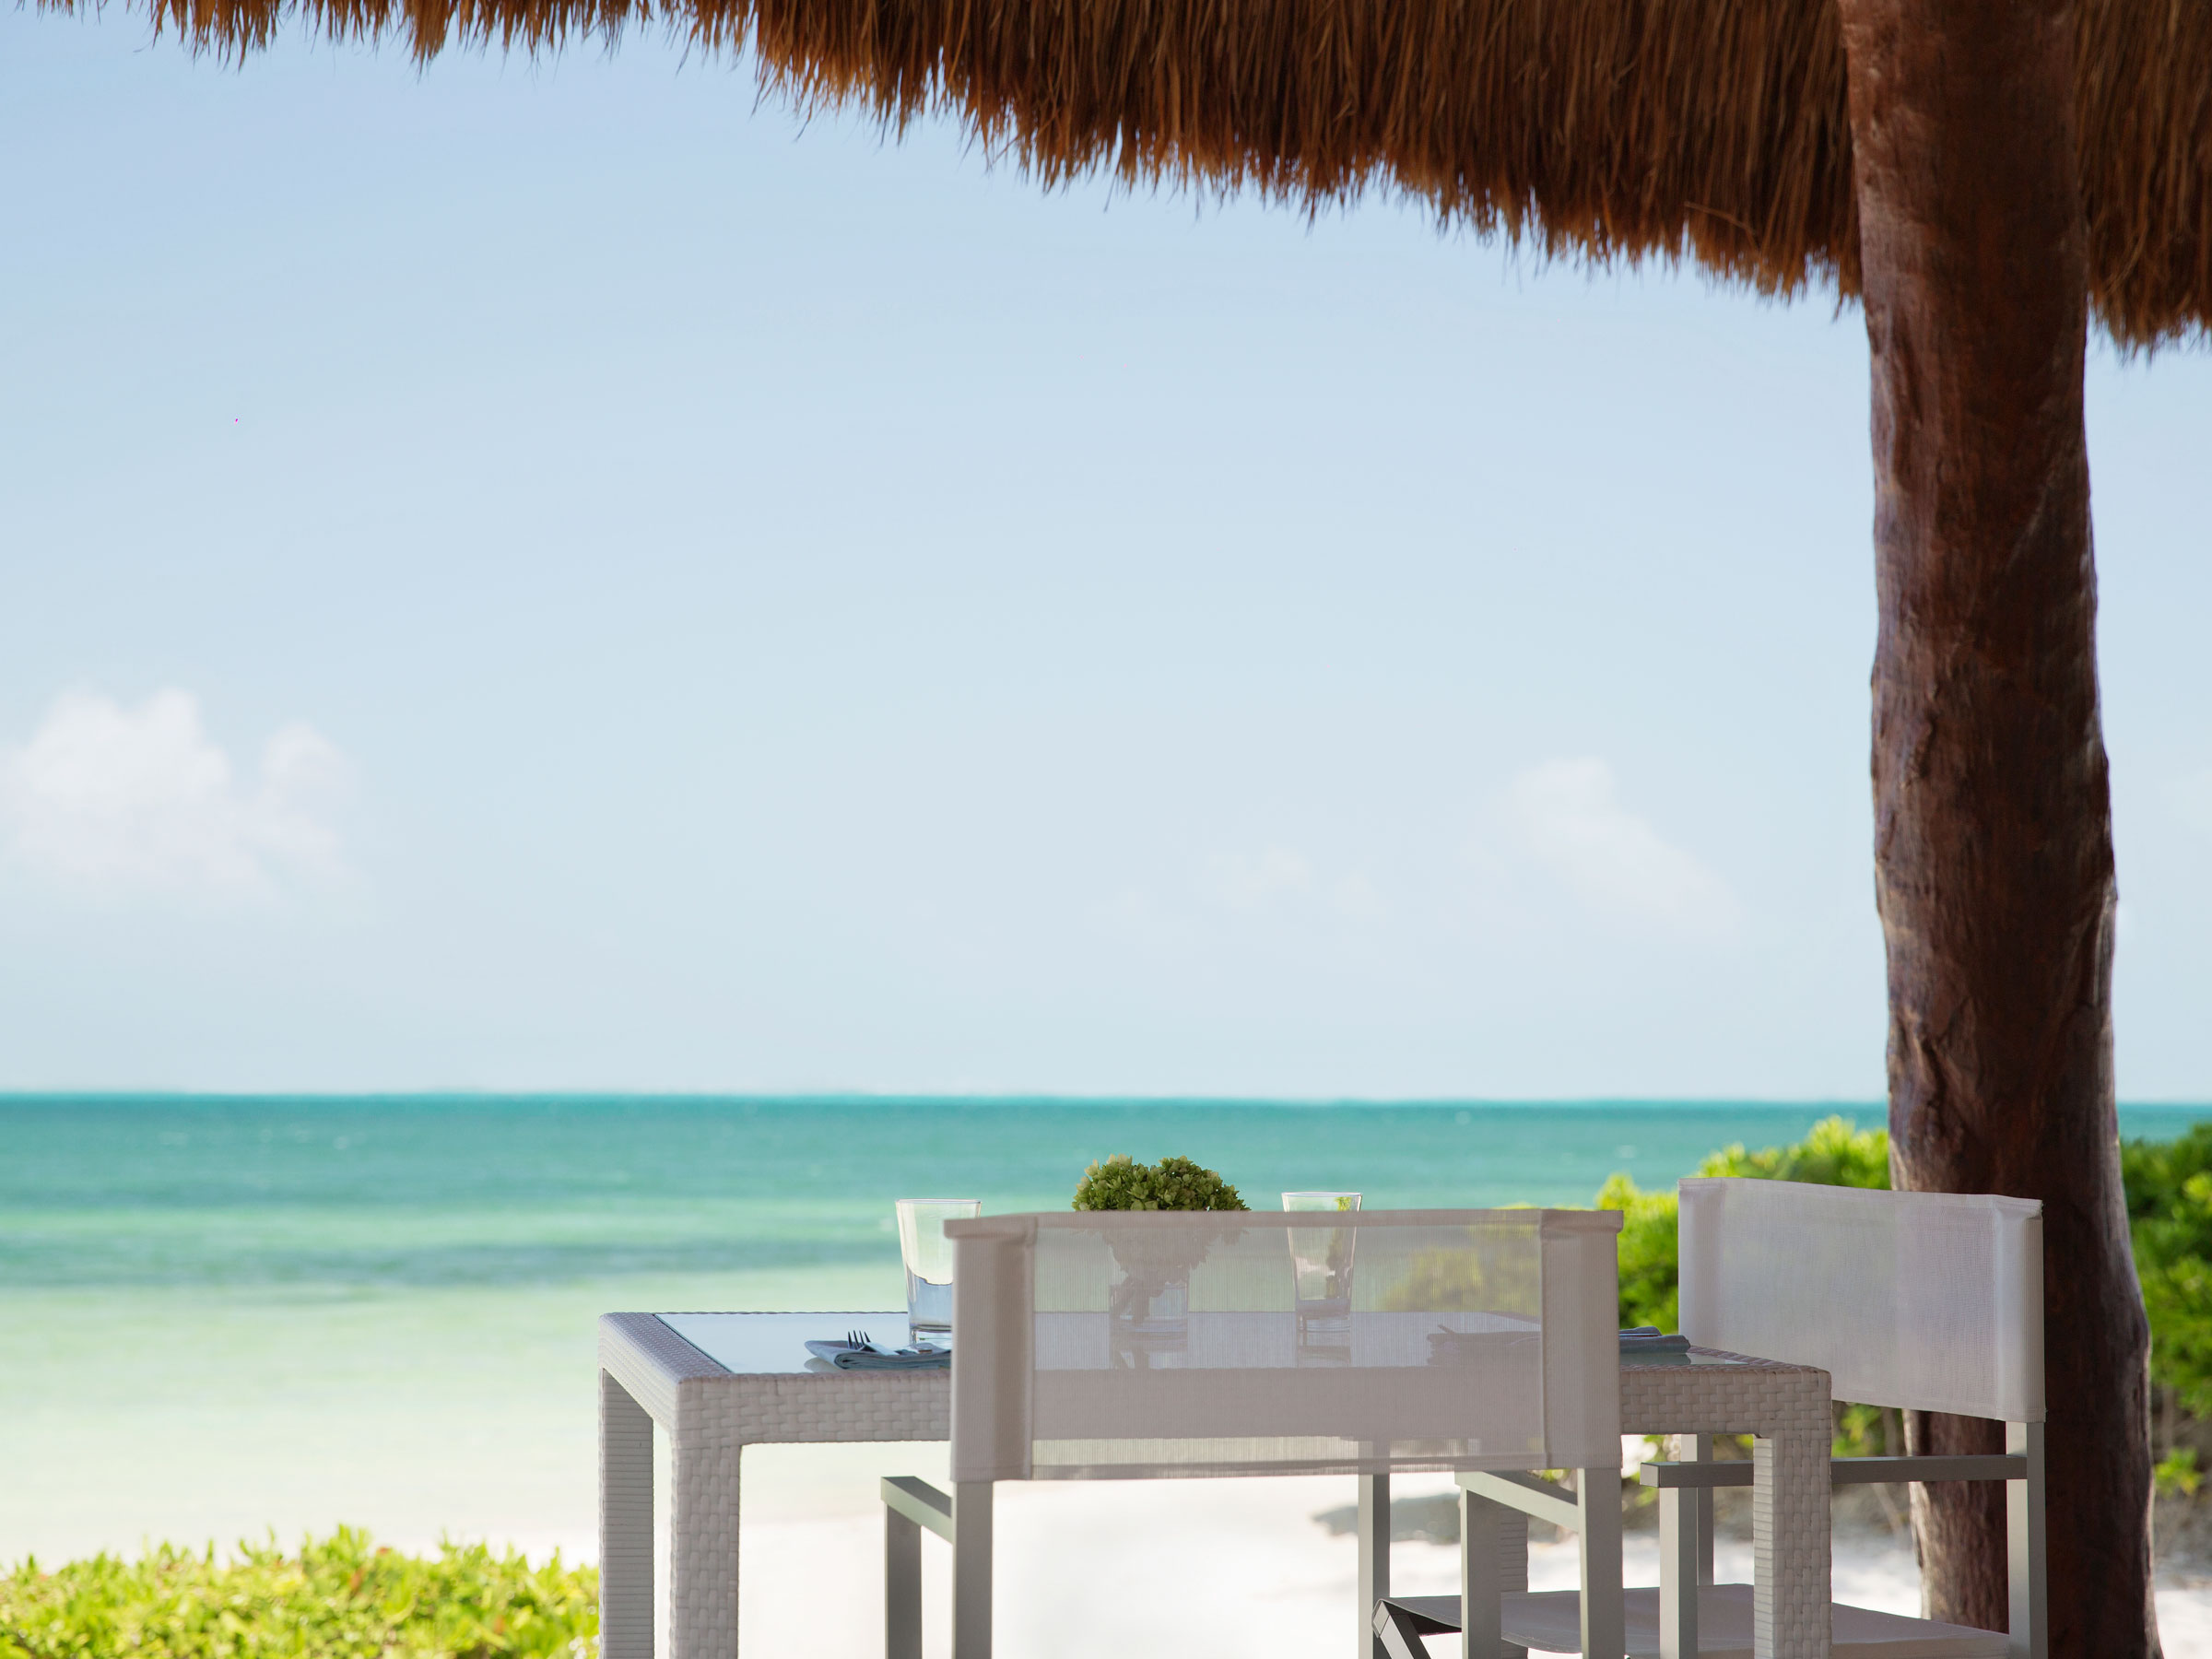 Restaurant avec vue sur mer à Cancun au Mexique